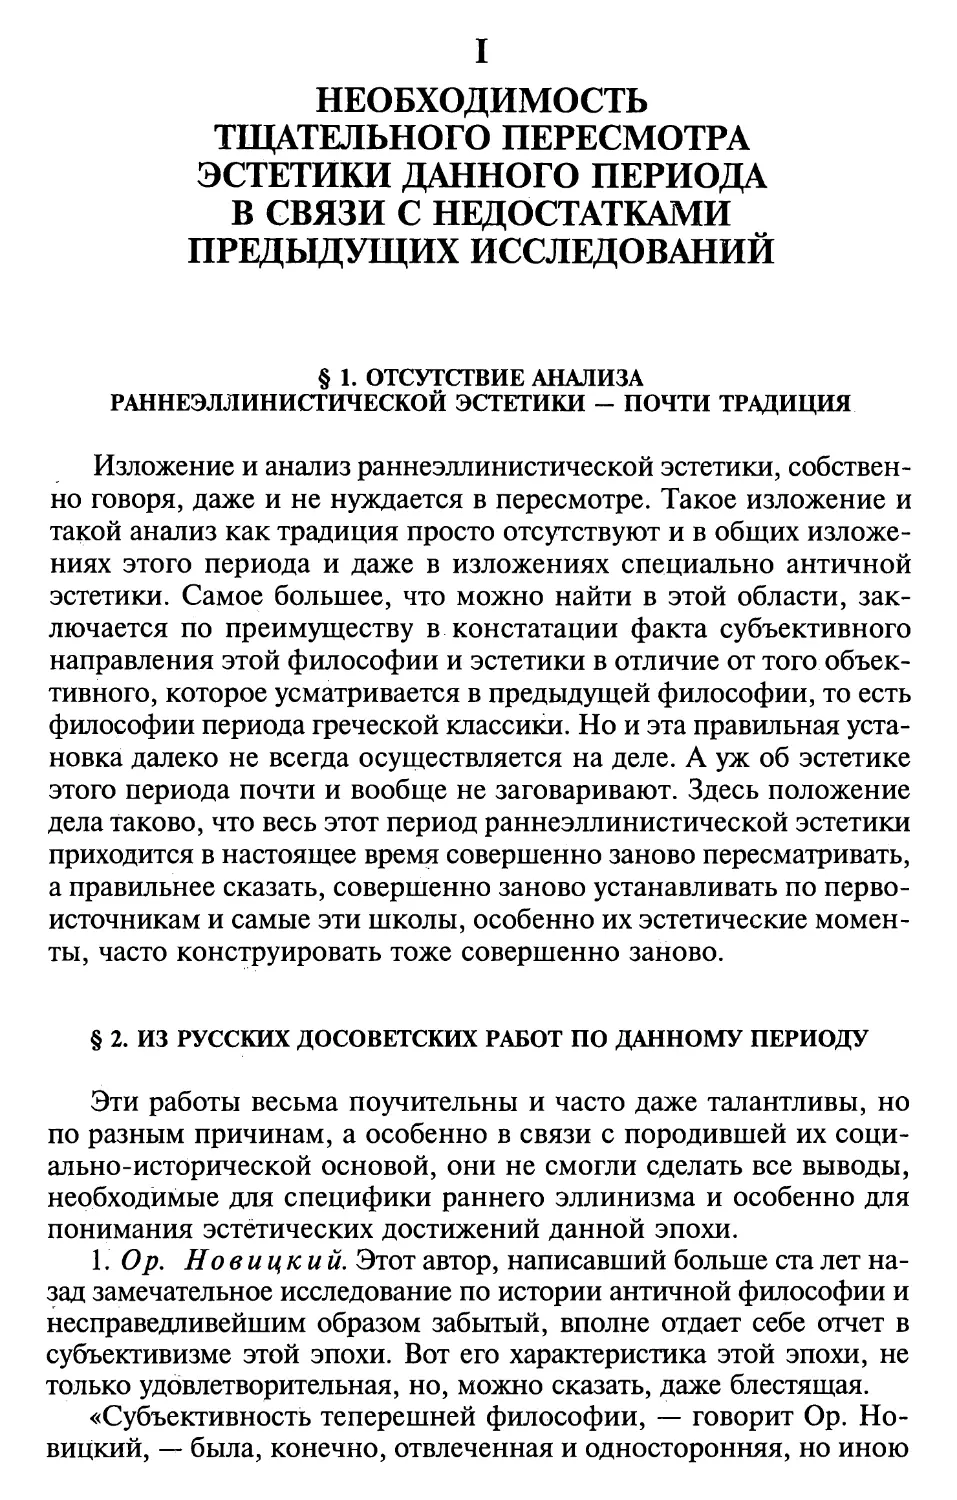 § 2. Из русских досоветских работ по данному периоду